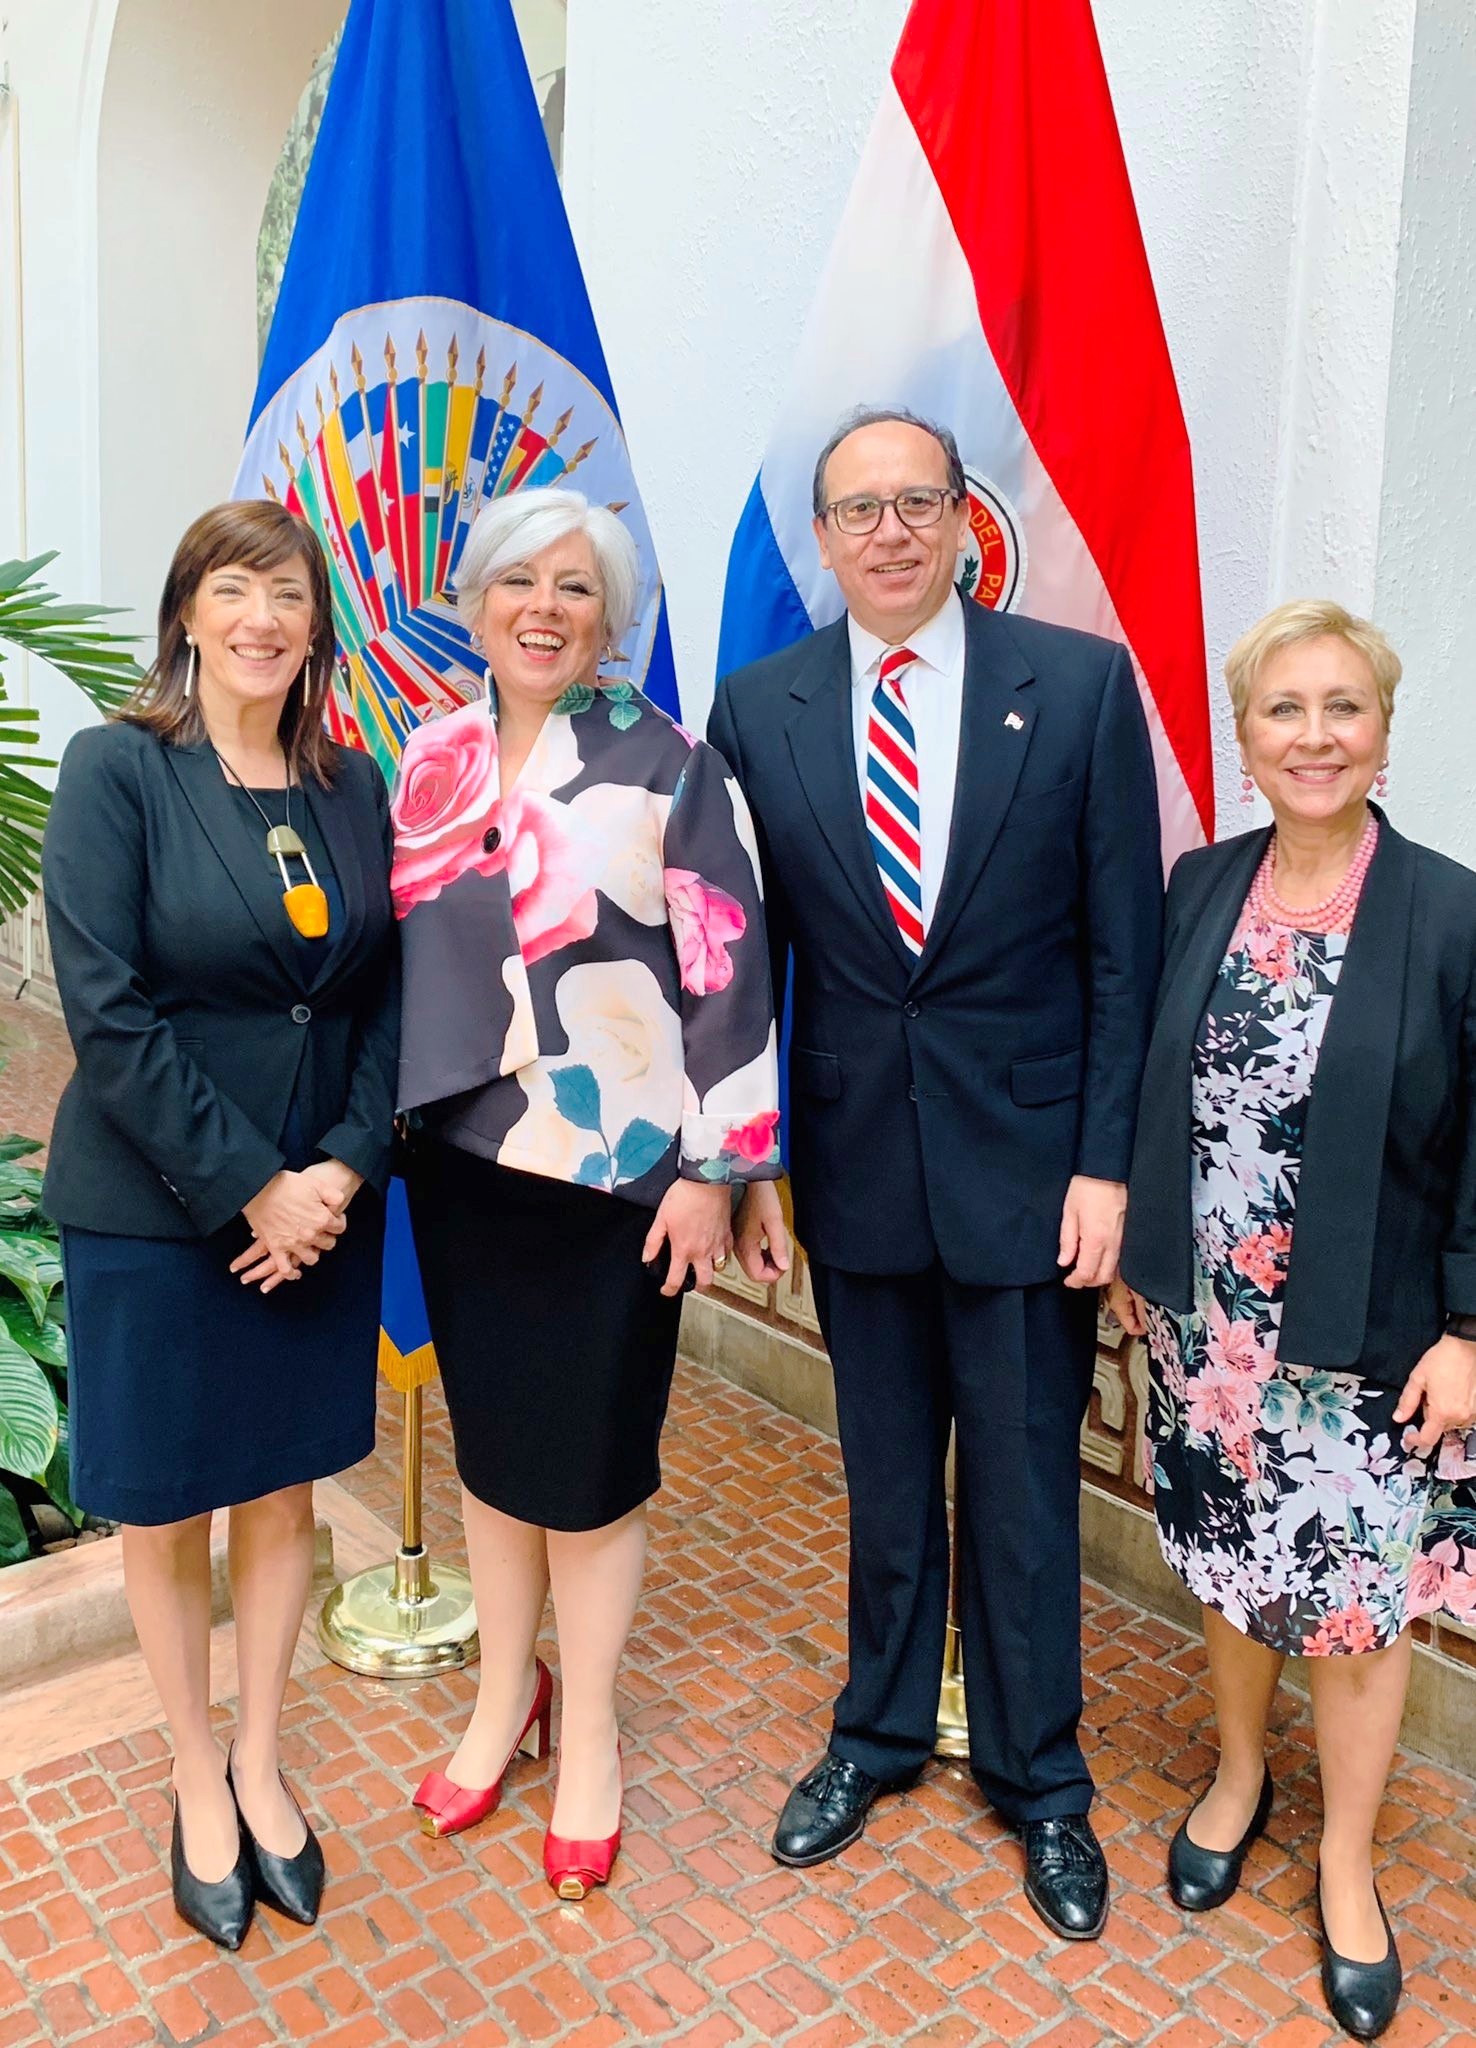 La Misión Permanente de Paraguay en la OEA celebró los 208 años de independencia del Paraguay